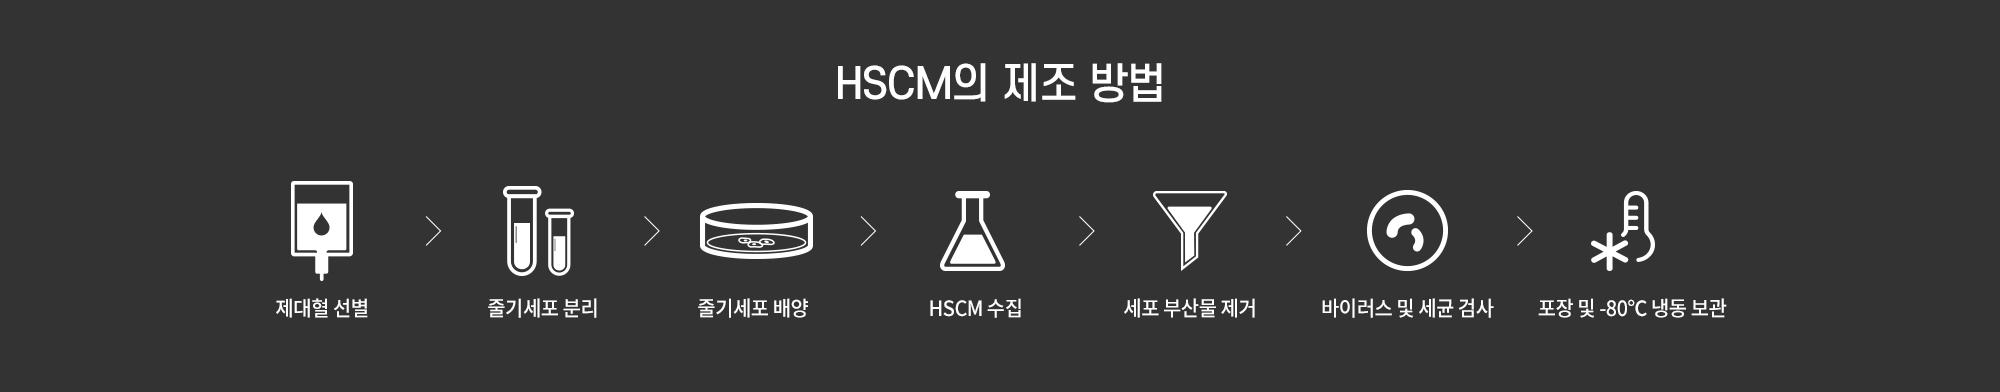 HSCM의 제조방법